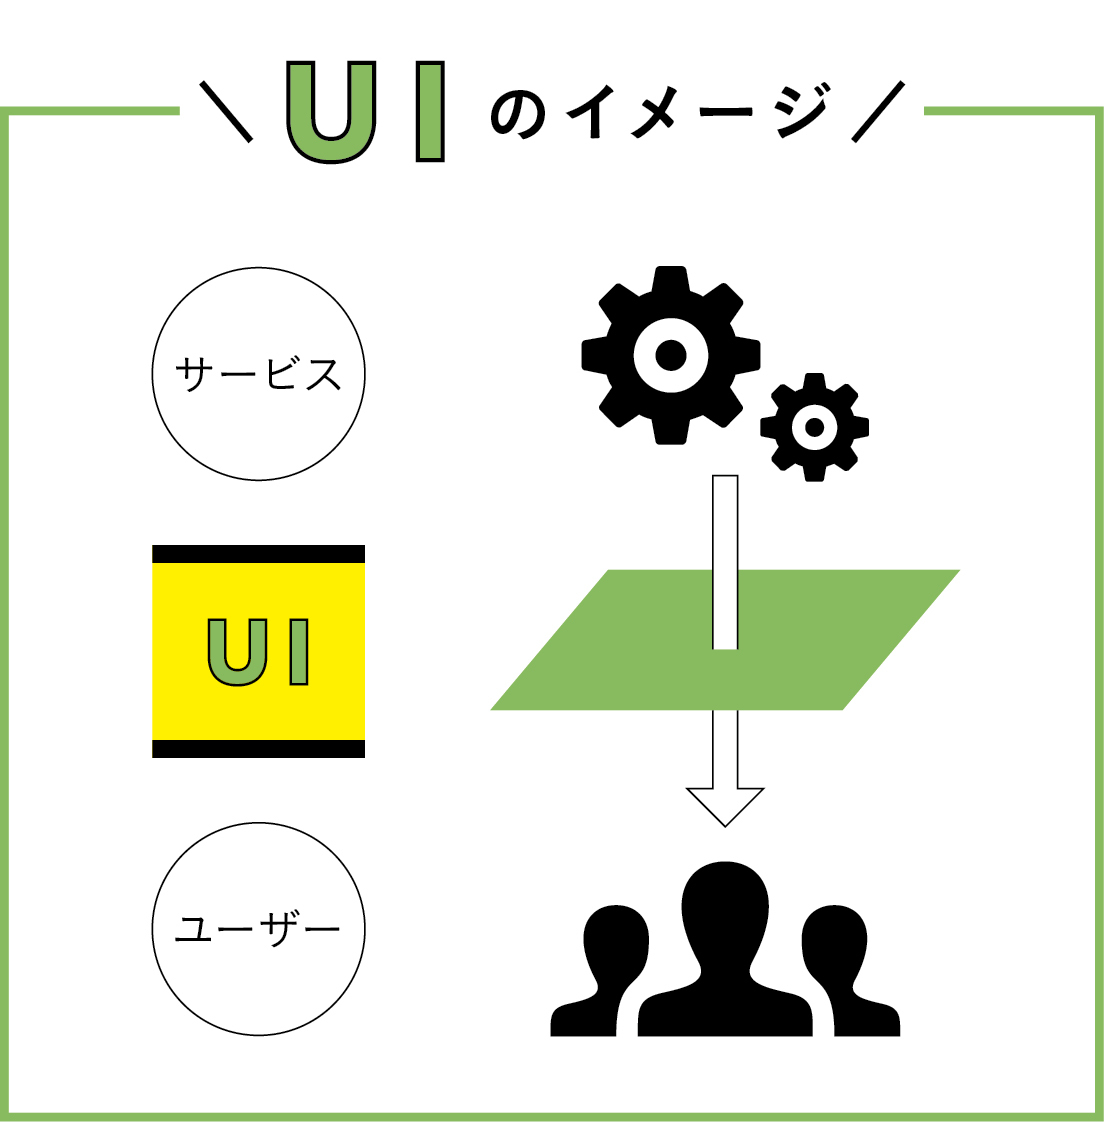 グッドパッチに聞く「UIデザインの本質的意義とその可能性」 Part.1　UIの基本